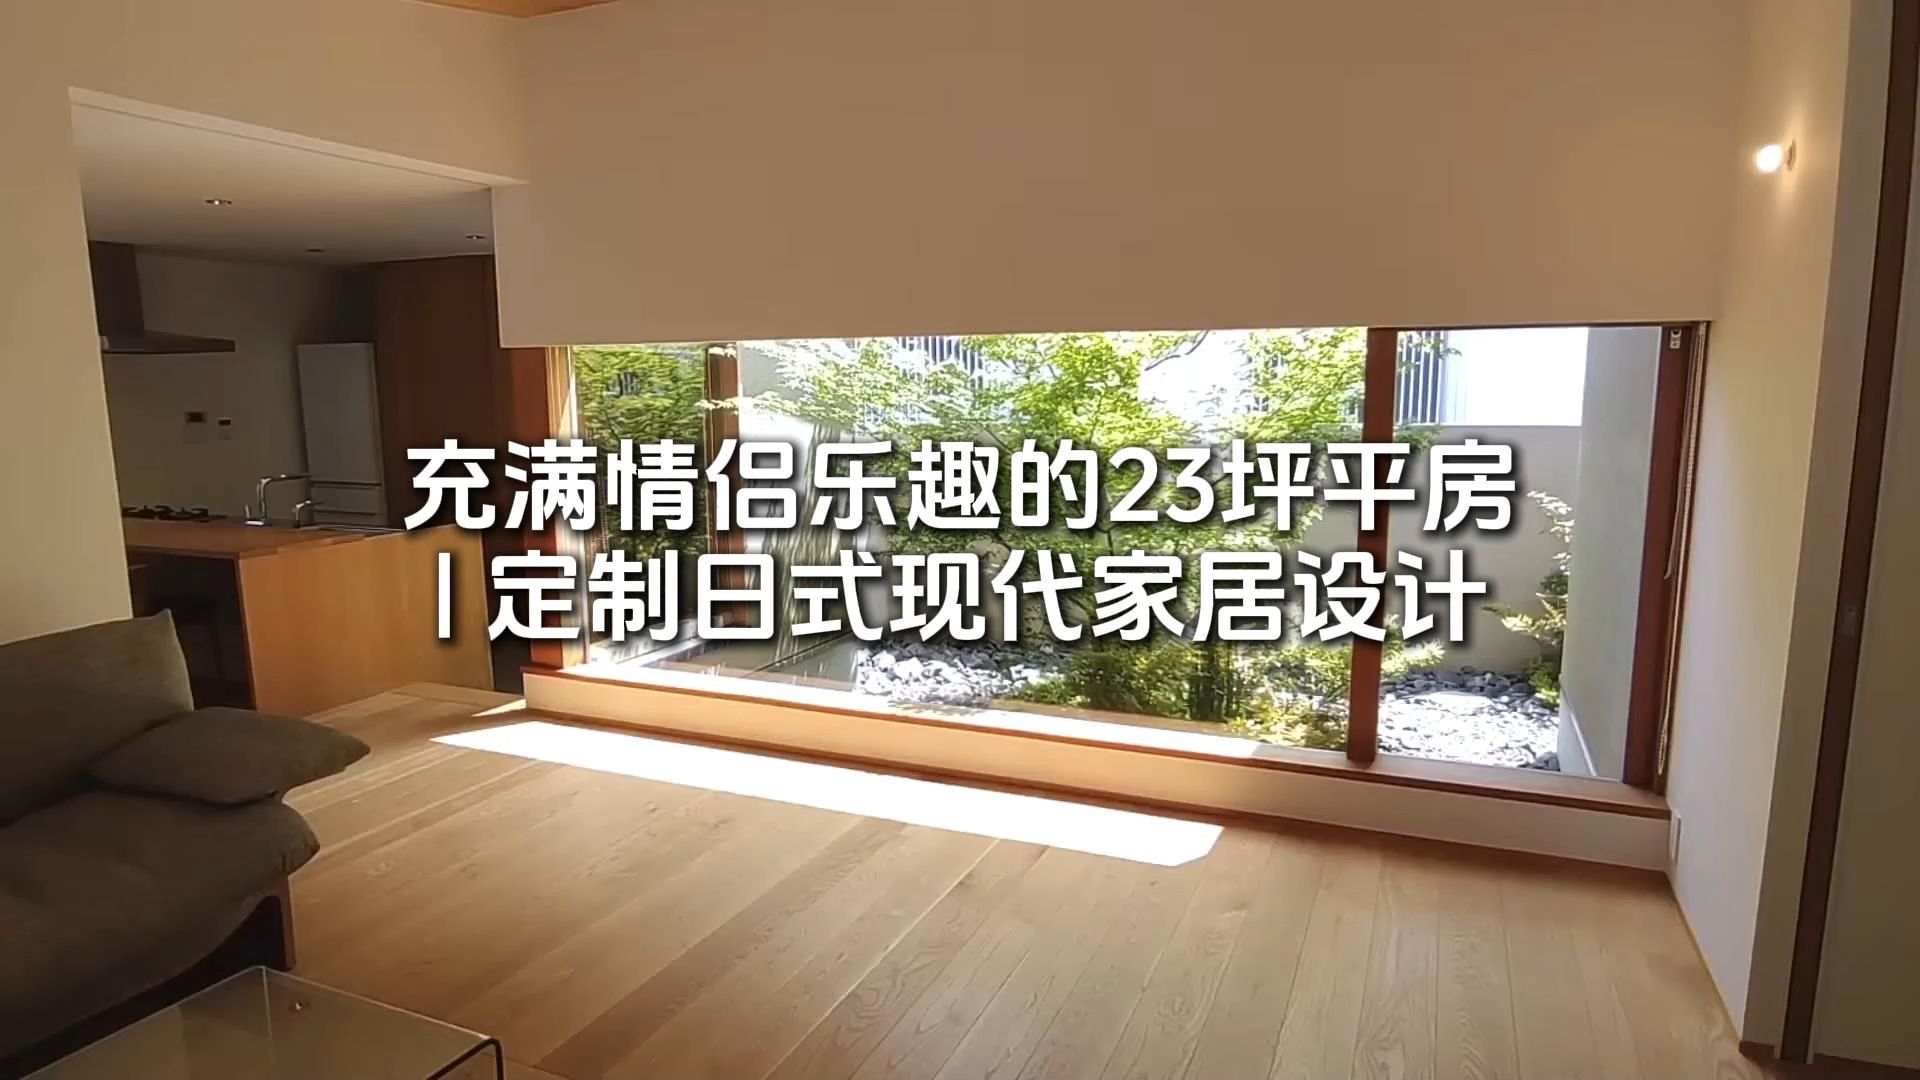 充满情侣乐趣的23坪平房 定制日式现代家居设计